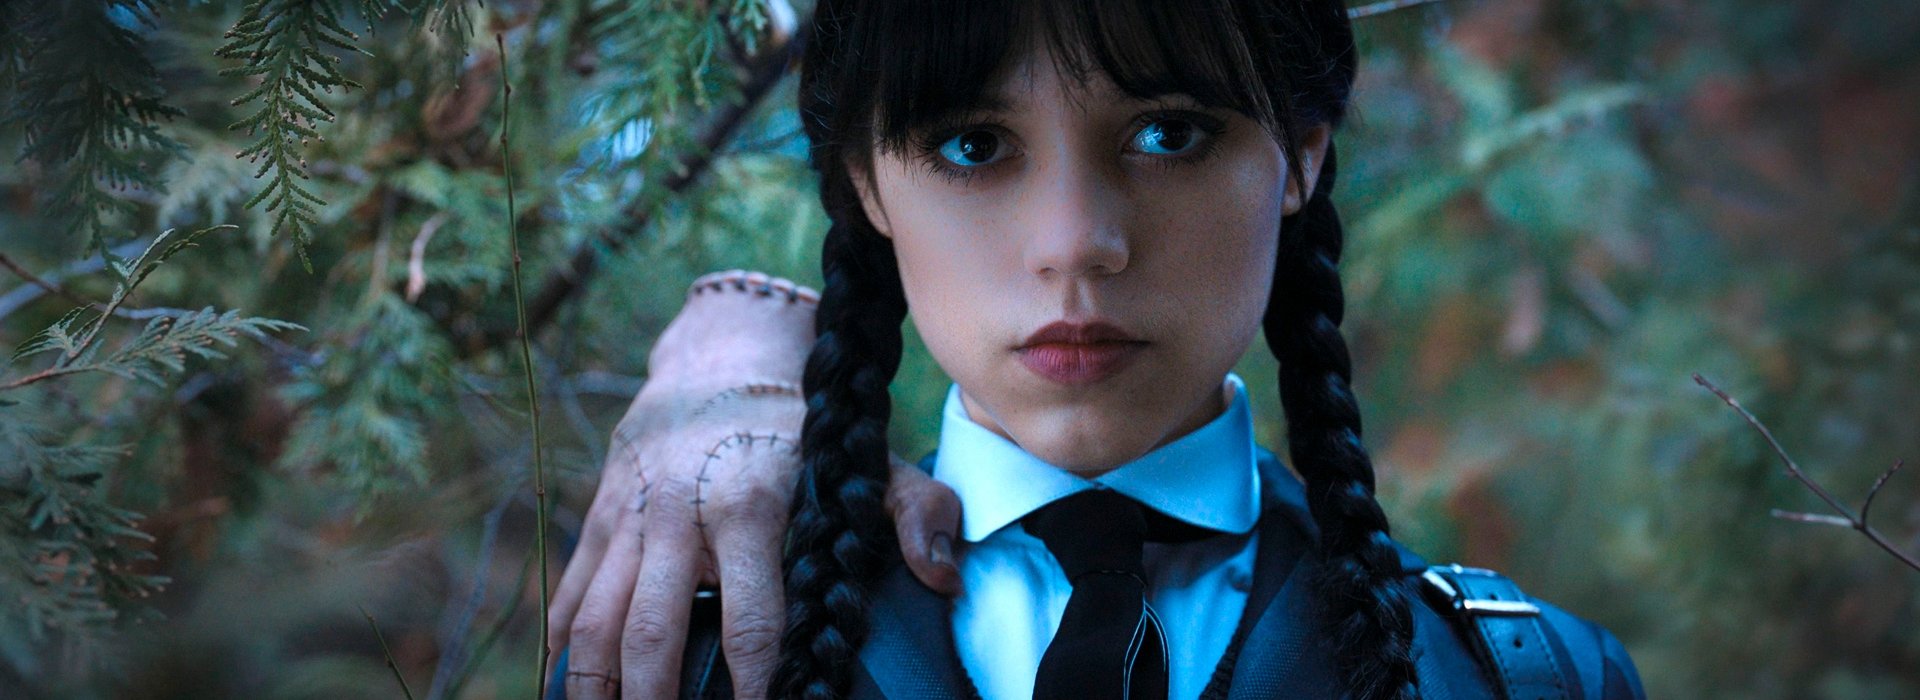 Background image for entry ¿Te gusta Miércoles Addams? 5 novelas que leer si eres fan de la serie de Netflix 